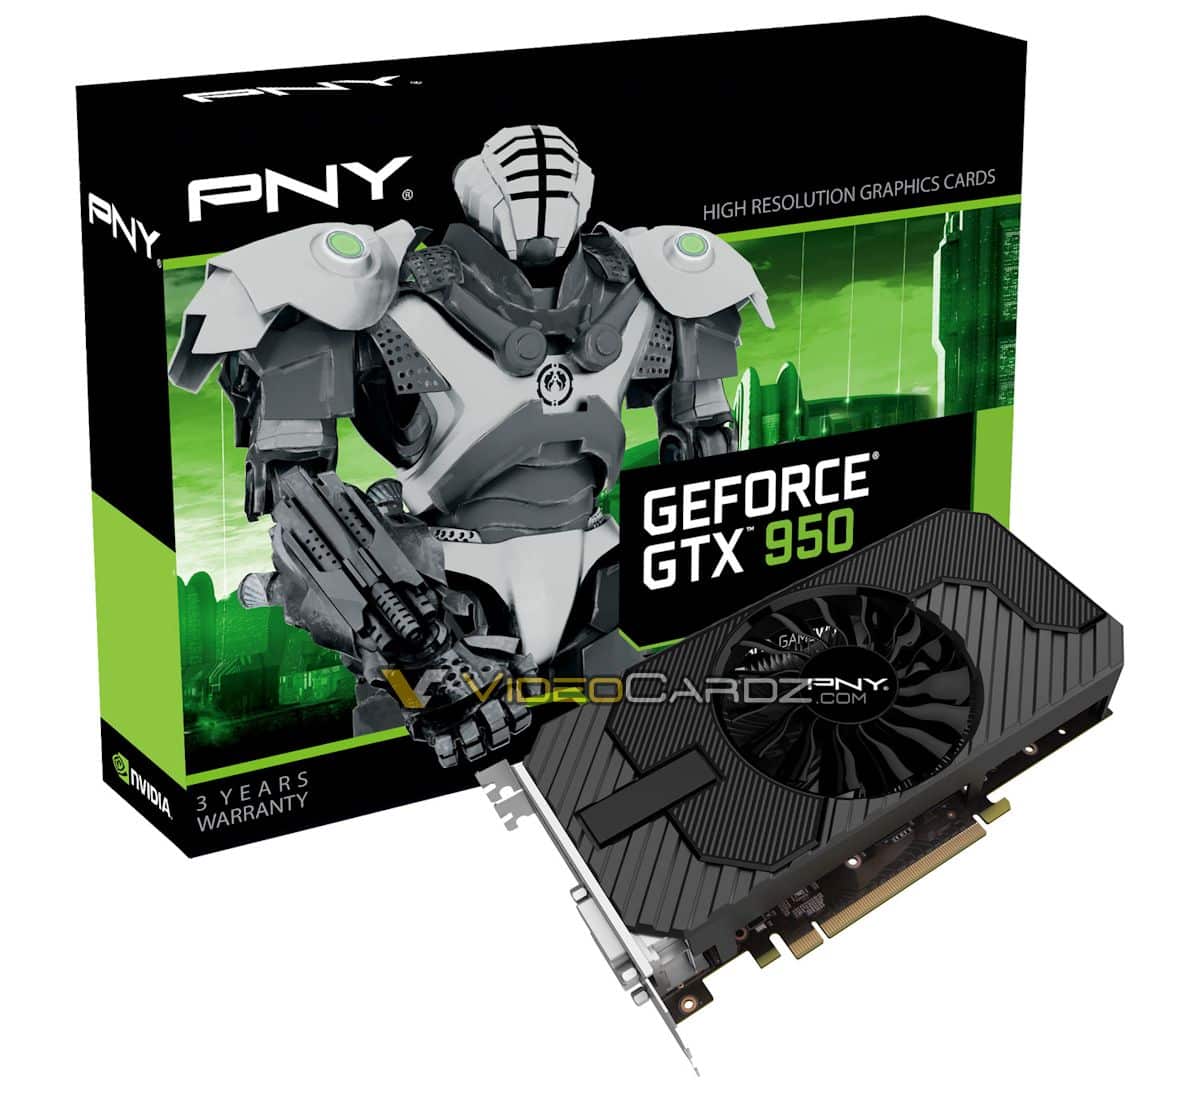 PNY GeForce GTX 950